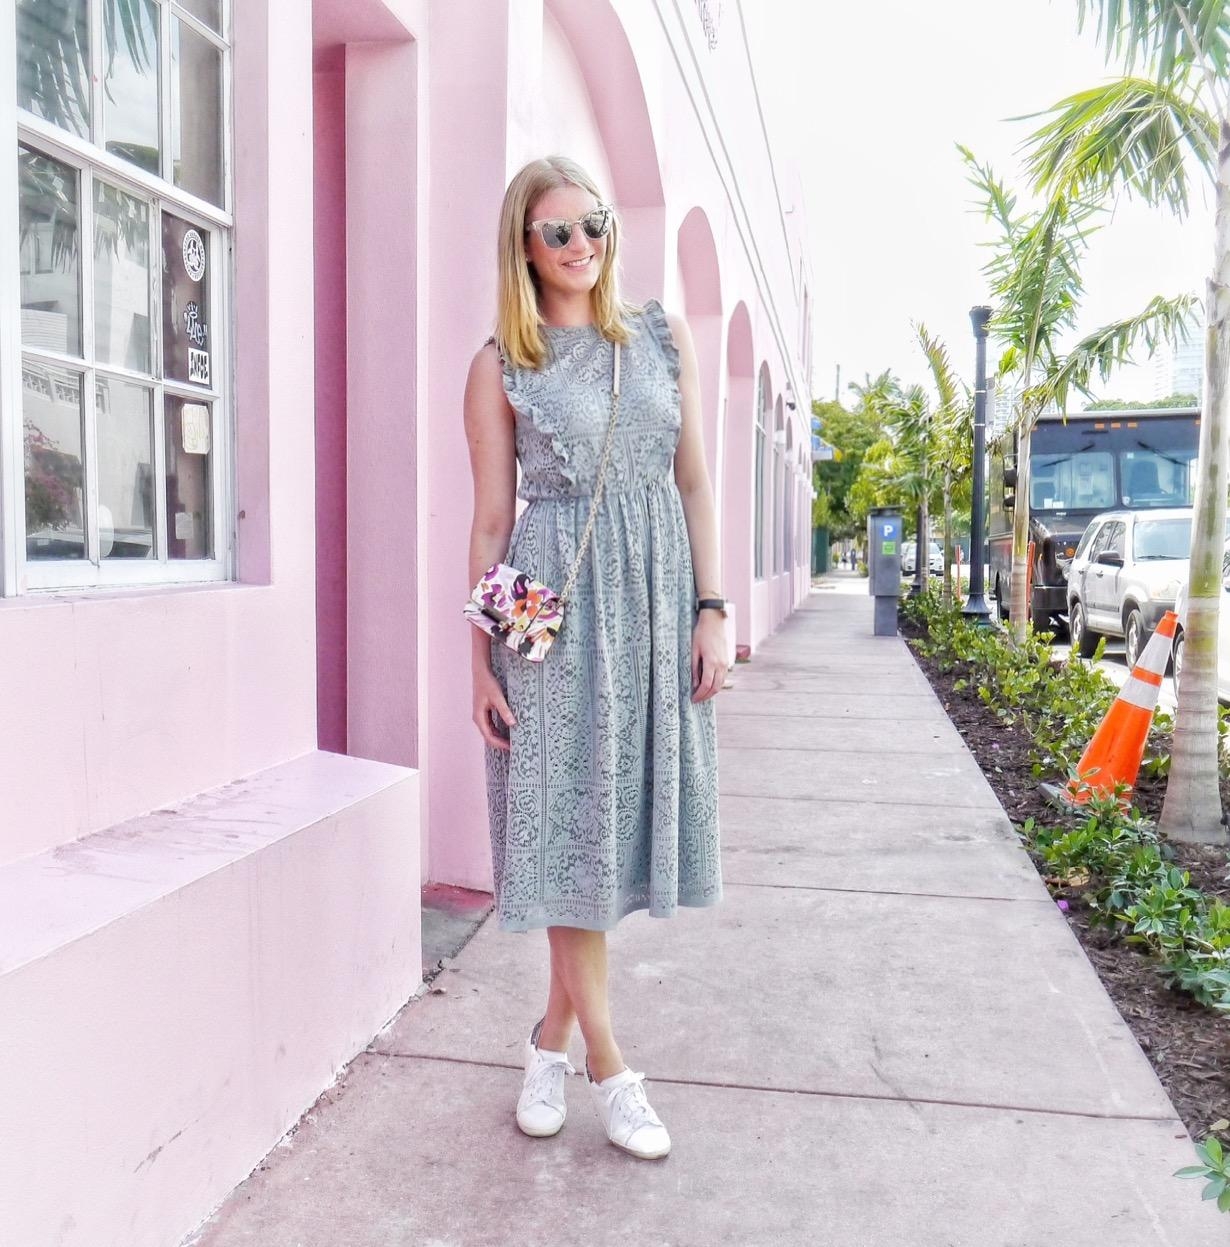 Lieblingskleid in der Lieblingsstadt. 💜
#Miami #Urlaub #pastellfarben #fashionlieblinge 